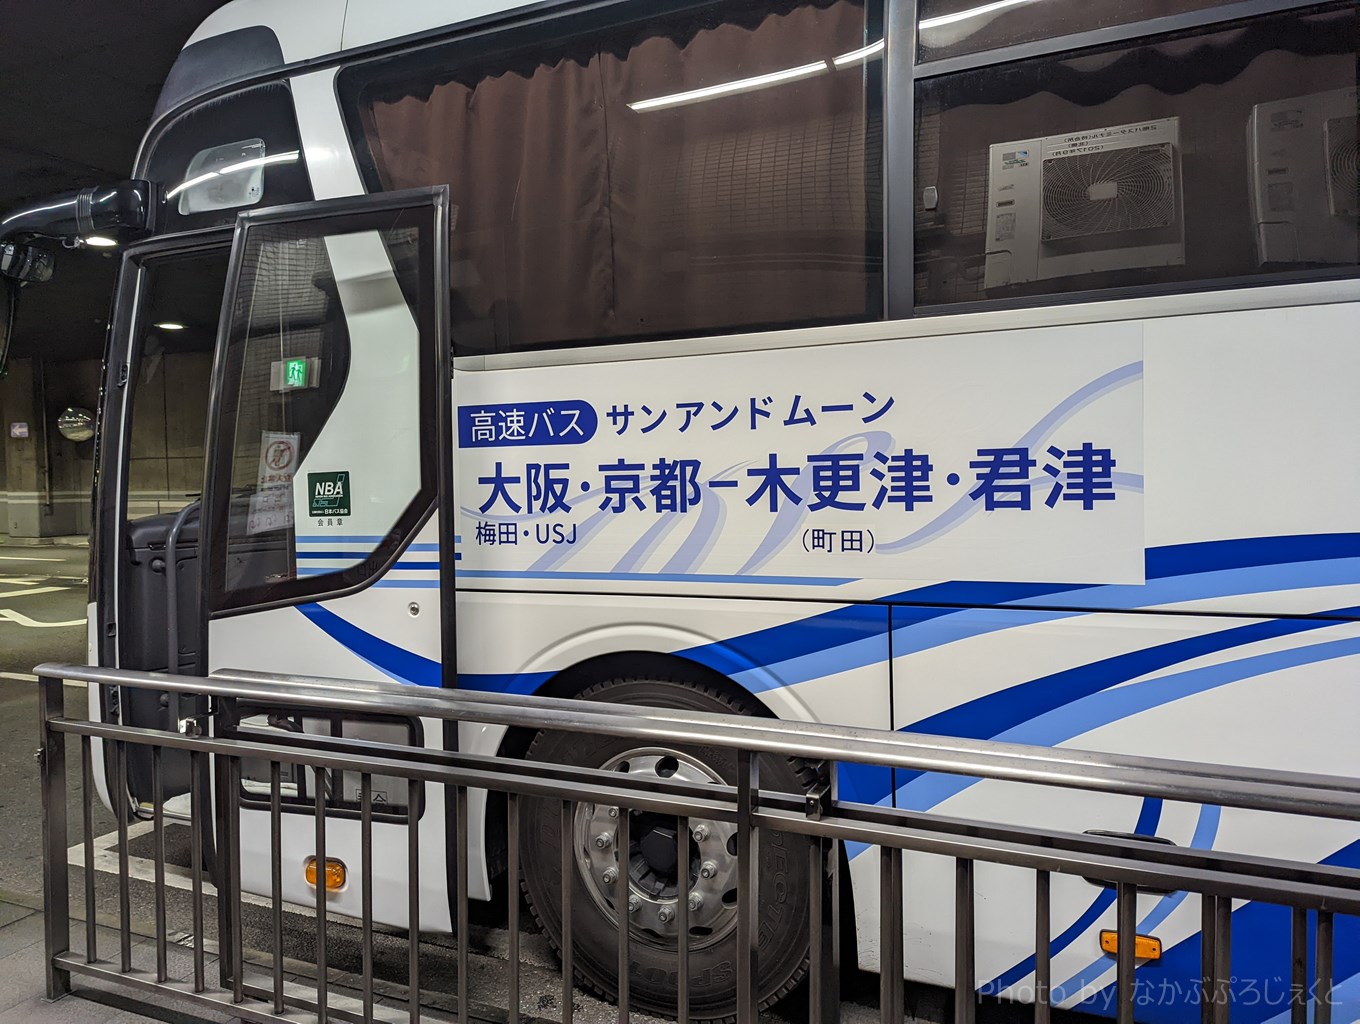 君津 木更津から乗り換えなし 新しく運行を開始した大新東の高速バス で 大阪まで行ってみました 木更津 君津 袖ケ浦の情報をお伝えするブログ なかぶぷろじぇくと